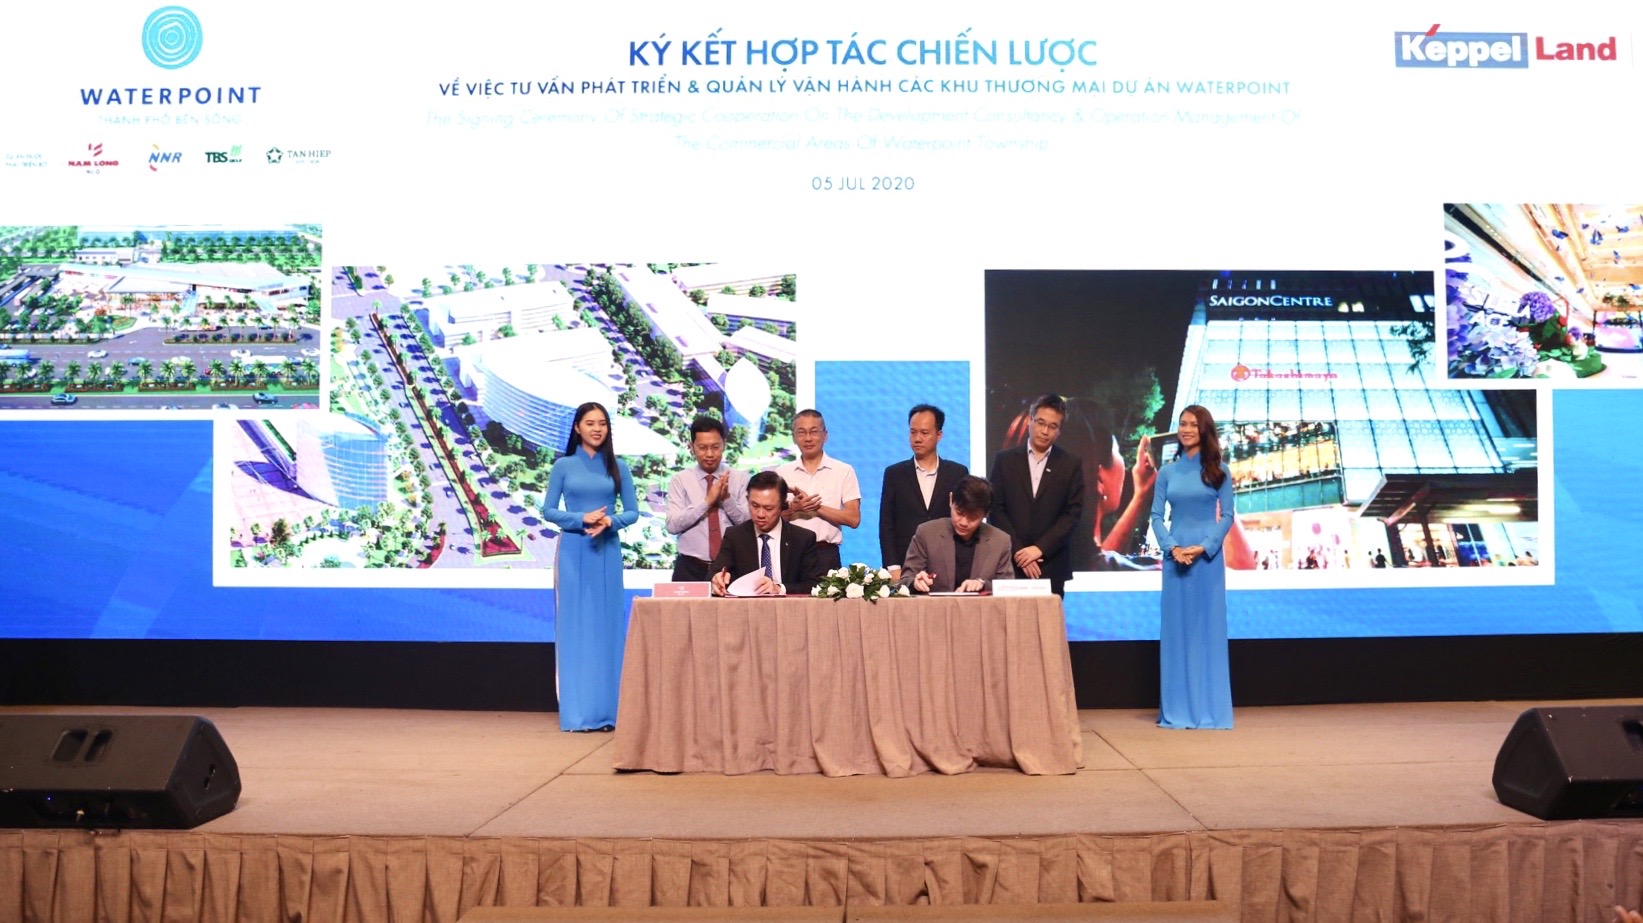 Nam Long (HOSE: NLG) ký kết thỏa thuận hợp tác chiến lược với  Keppel Land phát triển quỹ đất thương mại tại Waterpoint